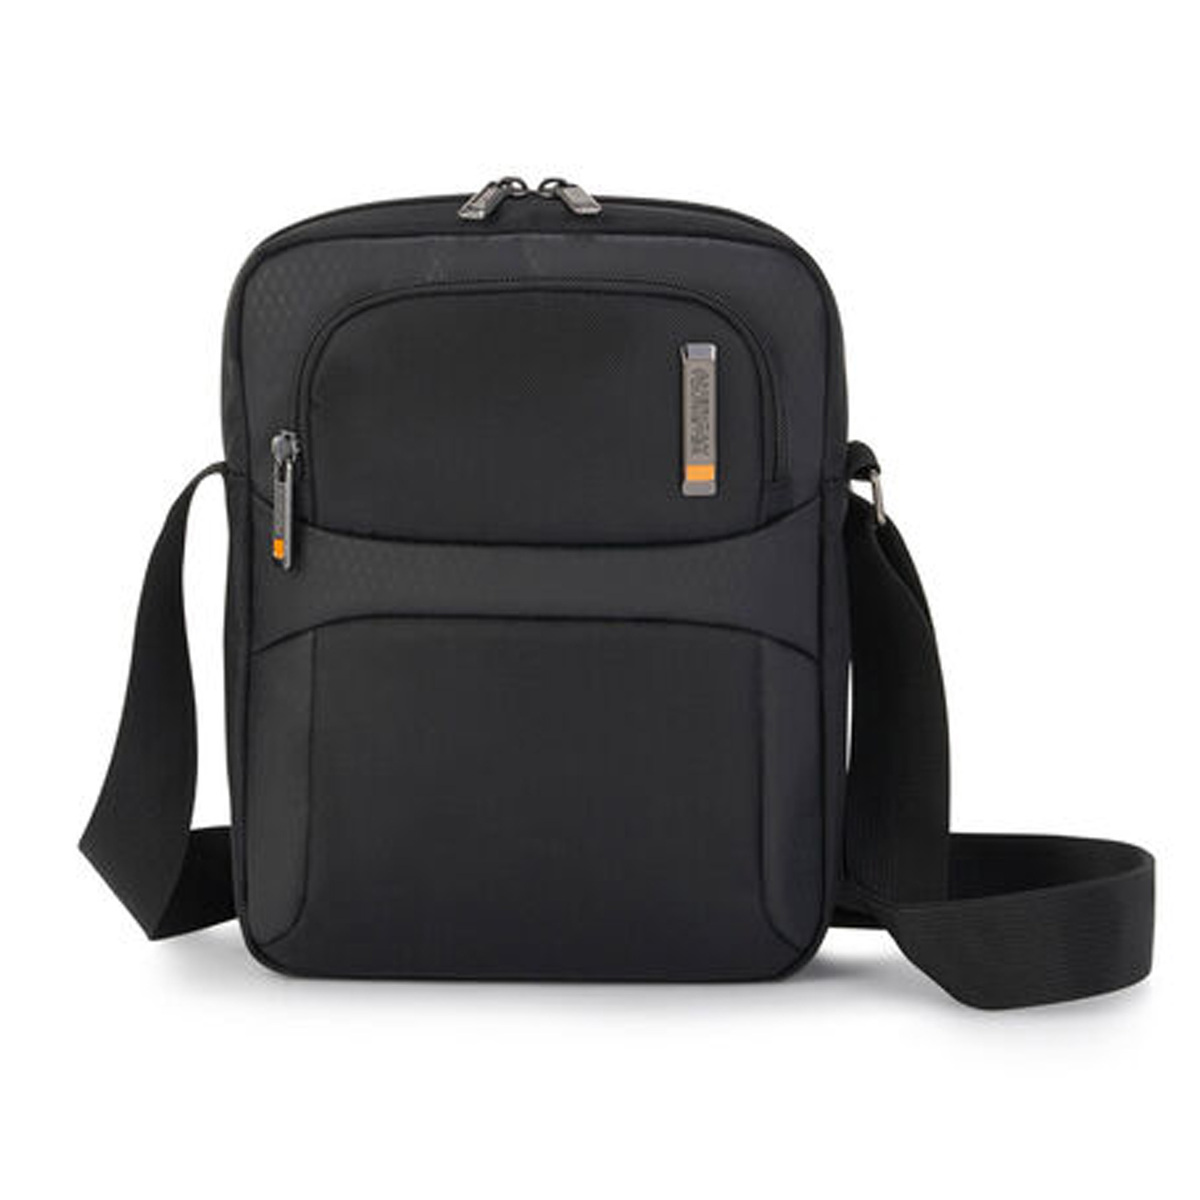 American Tourister Segno Shoulder Bag, 21 cm, Black, HD1 Online at Best ...